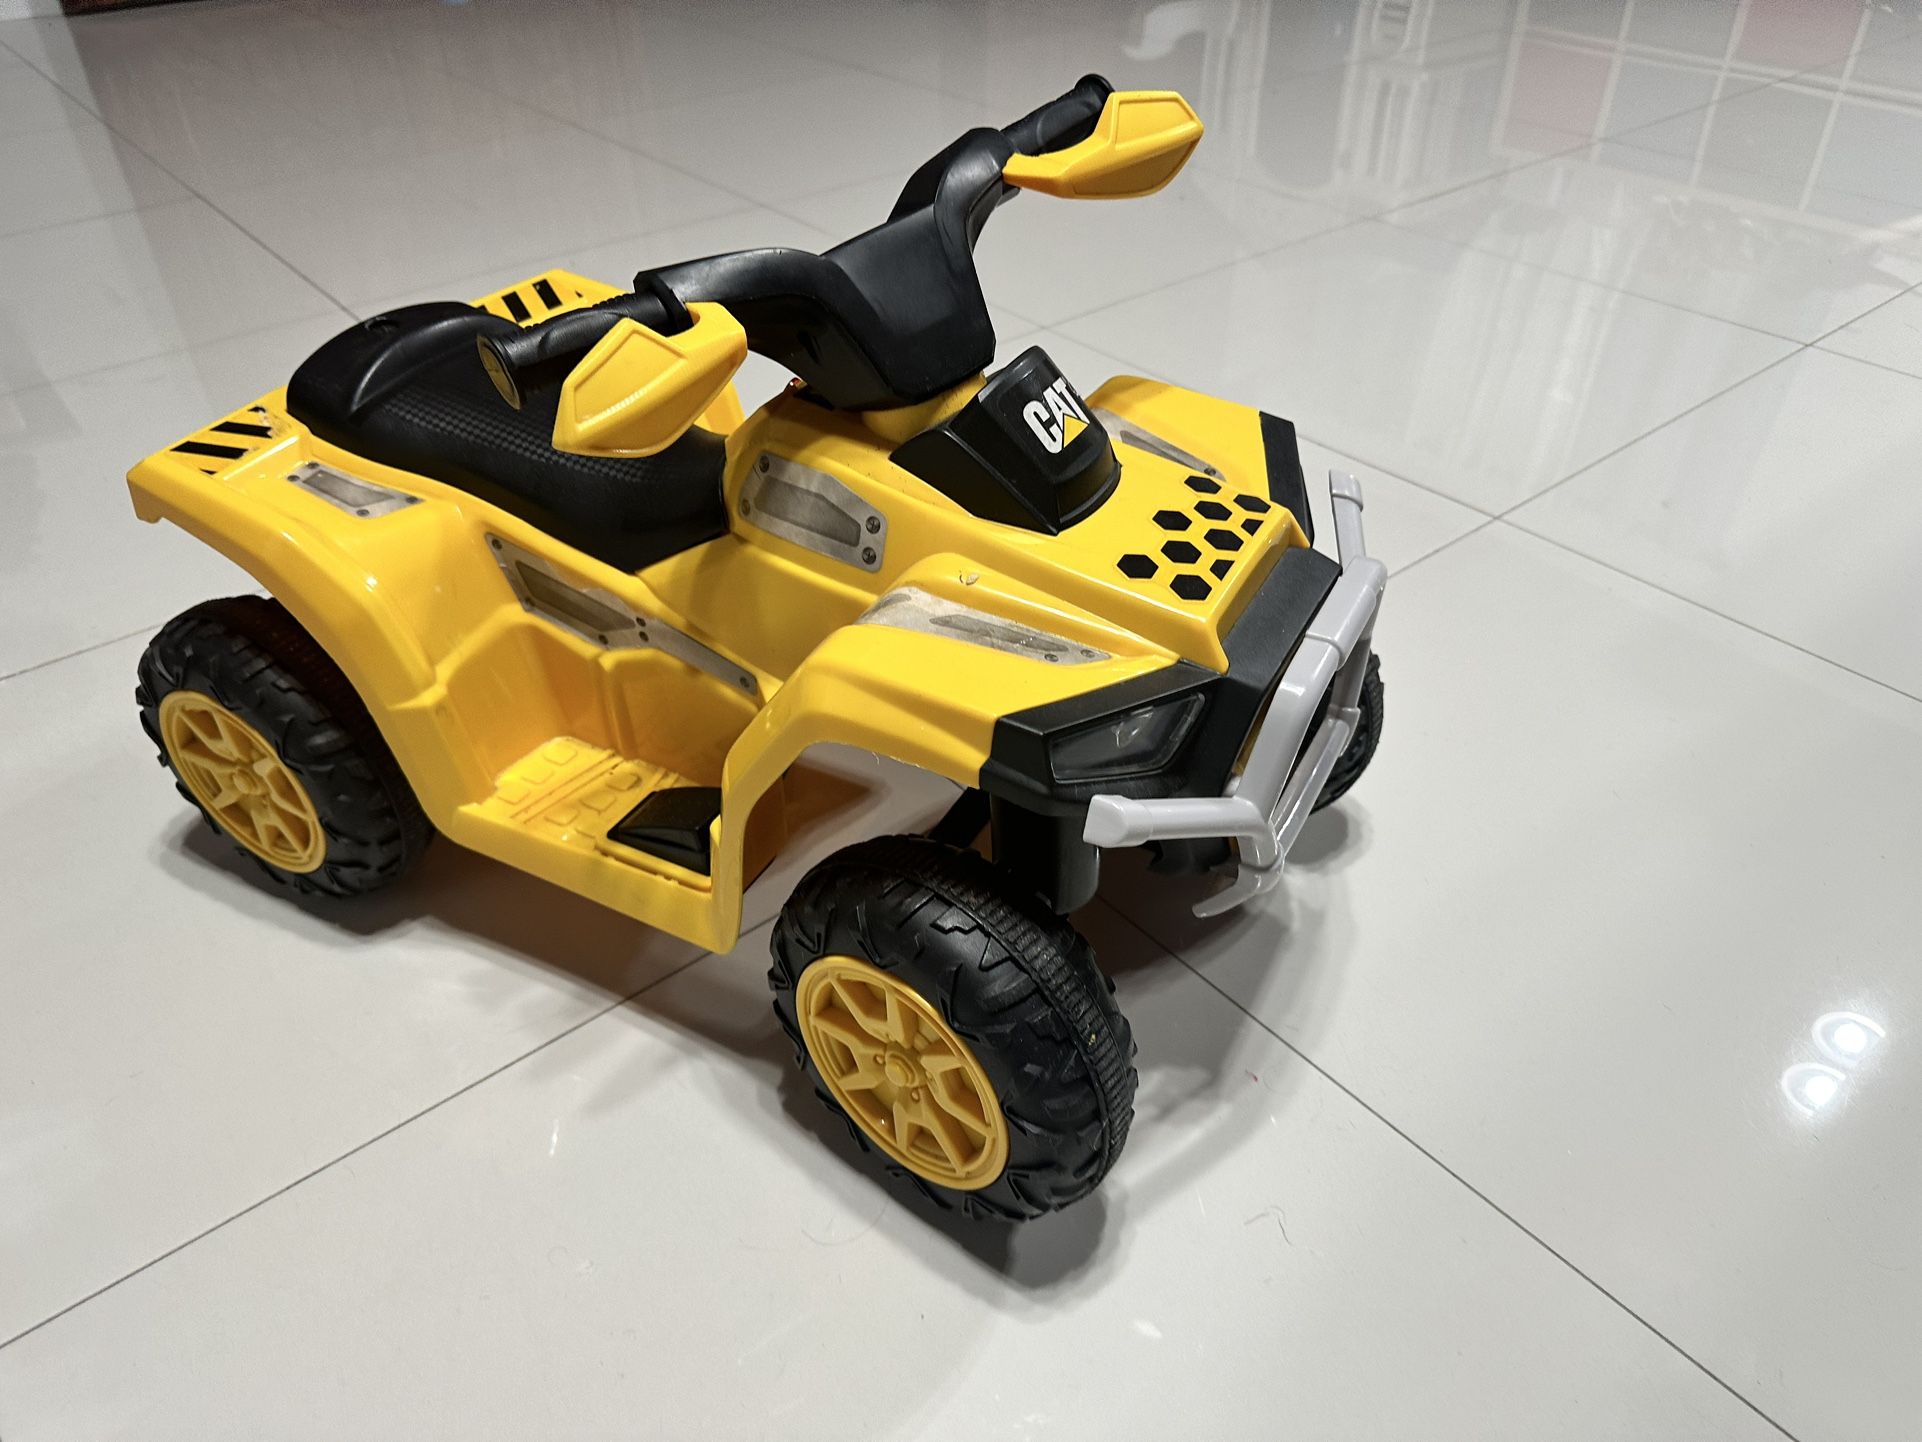 BobCat Electric ATV for Kids